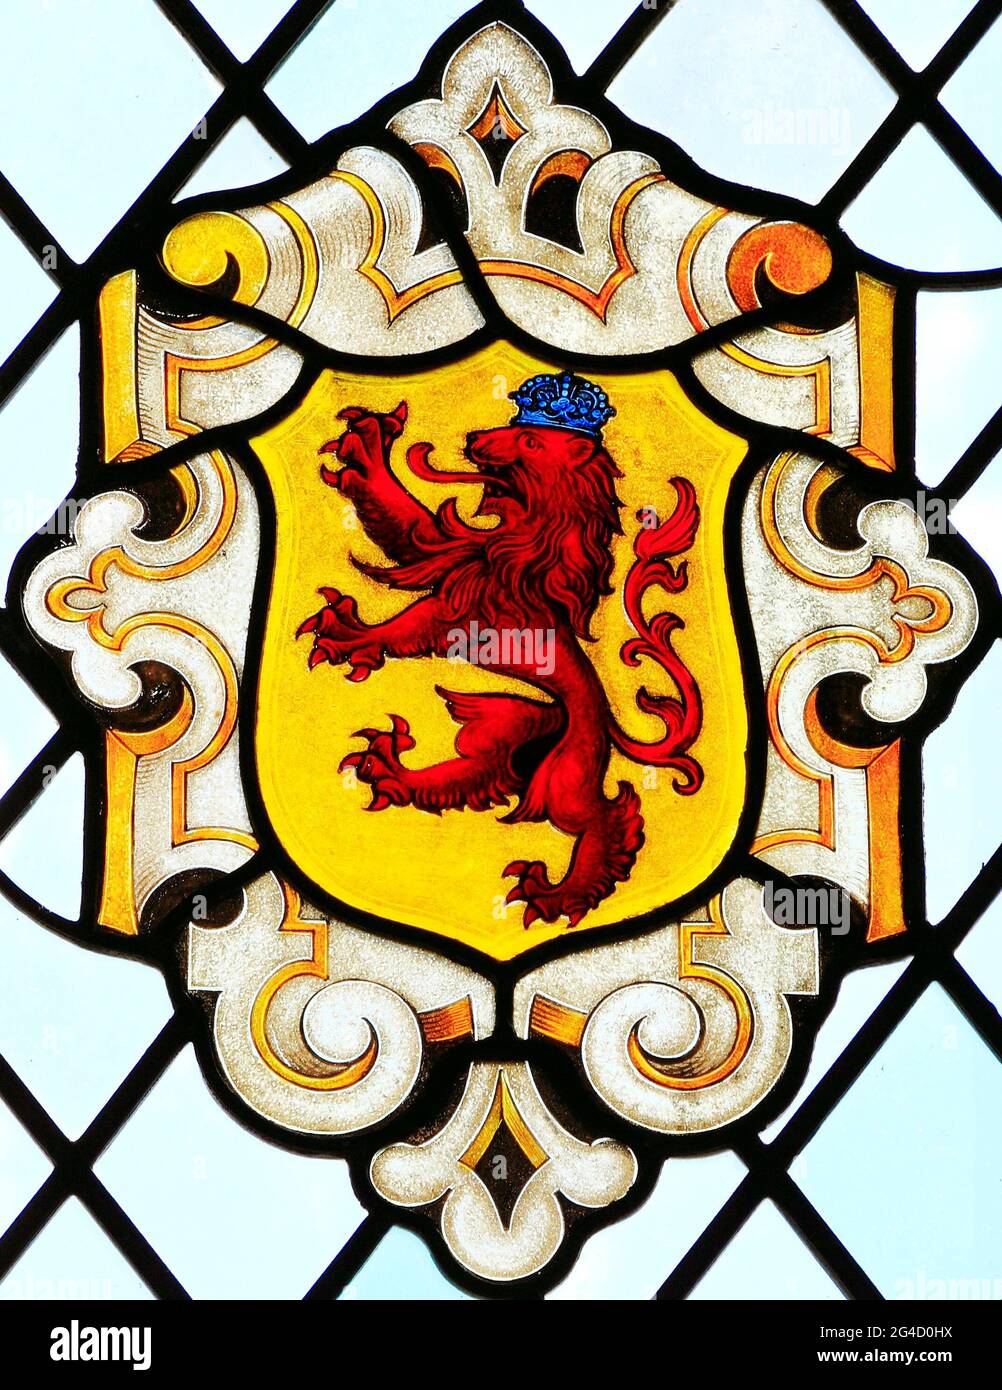 Héraldique, heralsèche, lion endémique, couronne, vitrail, East Barsham Manor, Norfolk, Angleterre, Royaume-Uni Banque D'Images